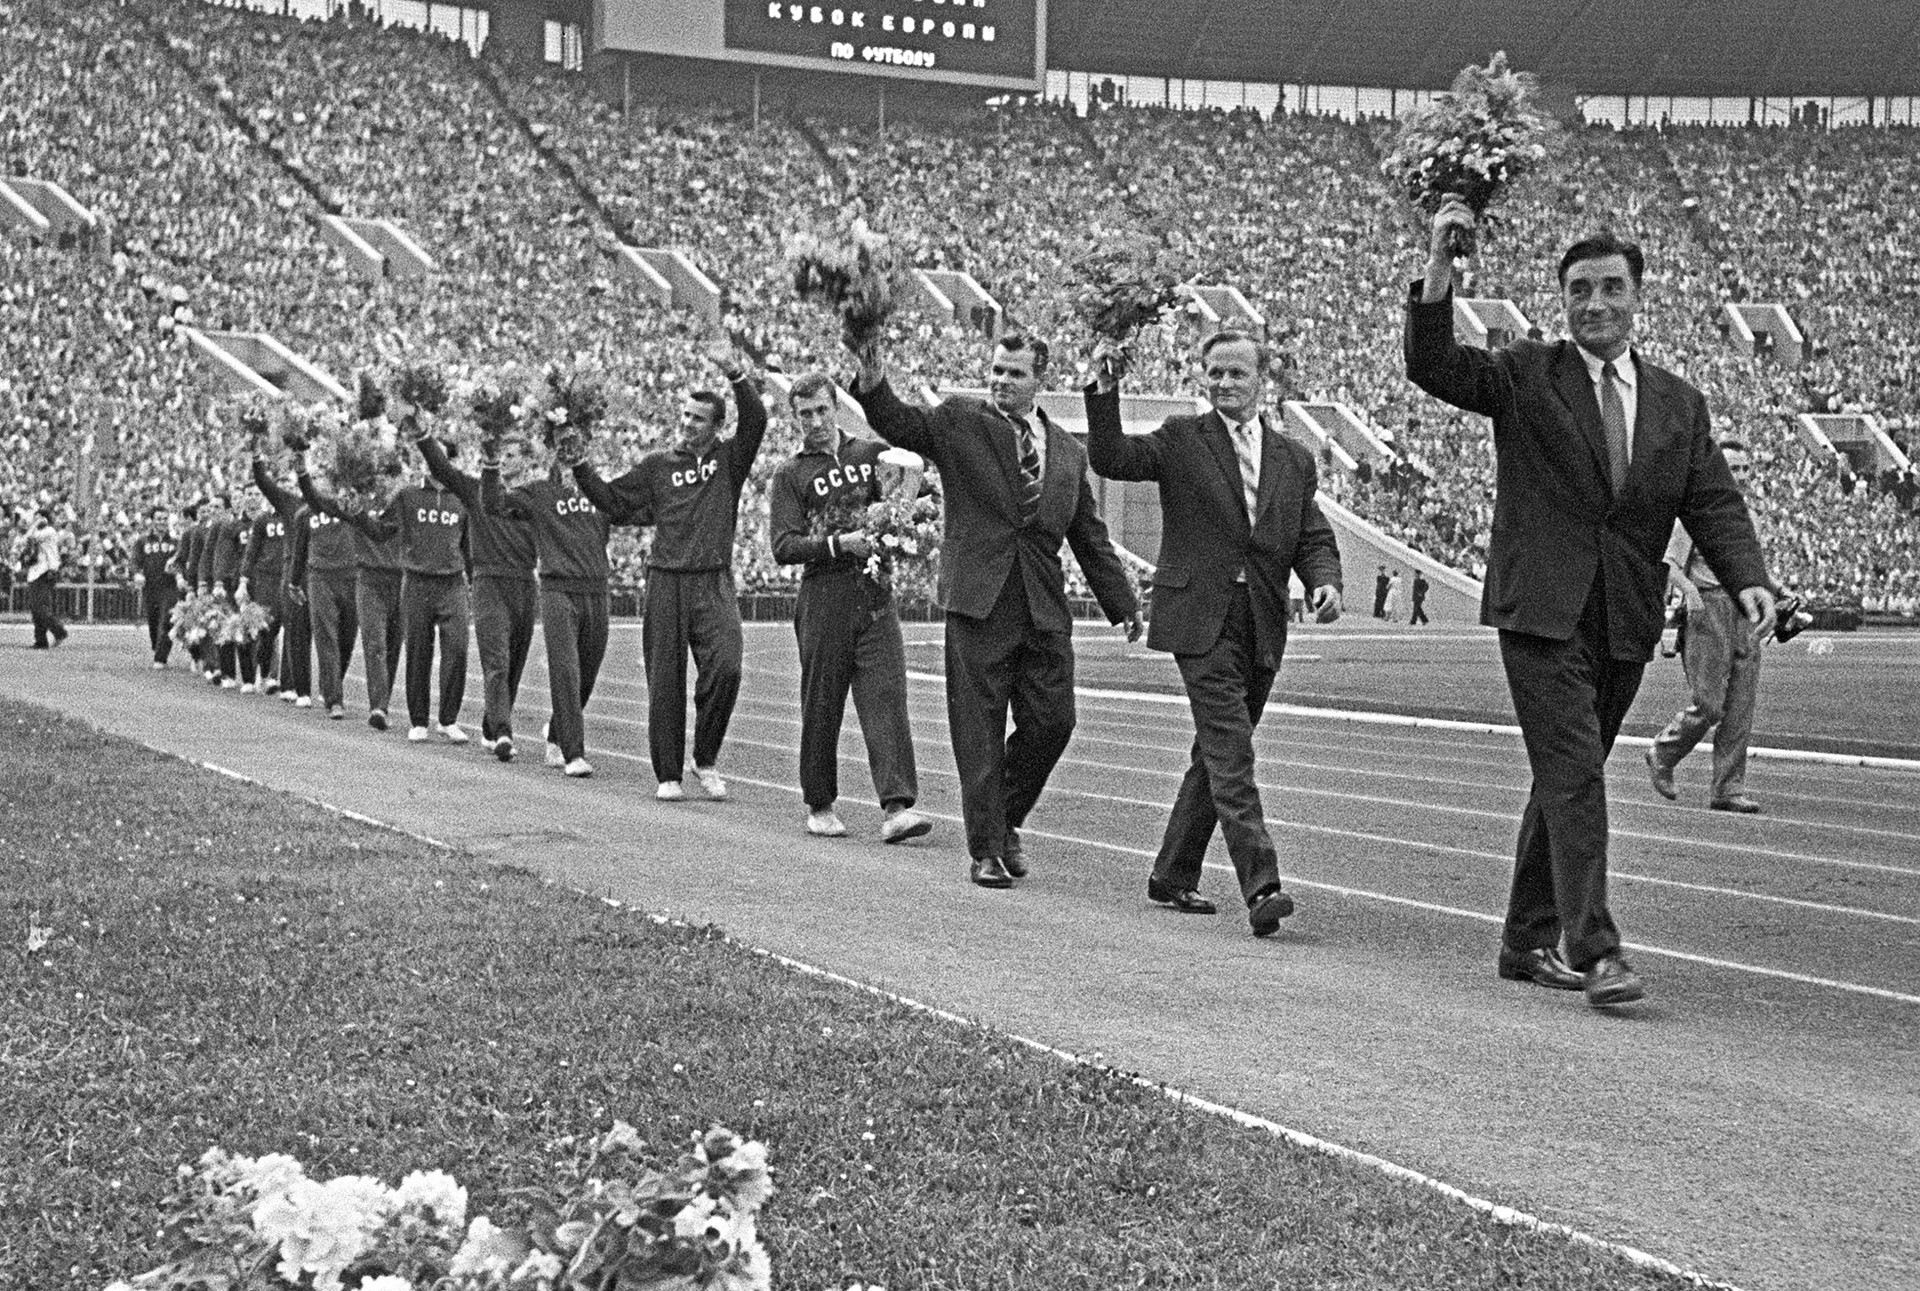 Sovjetska nogometna reprezentacija nakon svoje prve pobjede u povijesti na Europskom nogometnom prvenstvu 1960. 